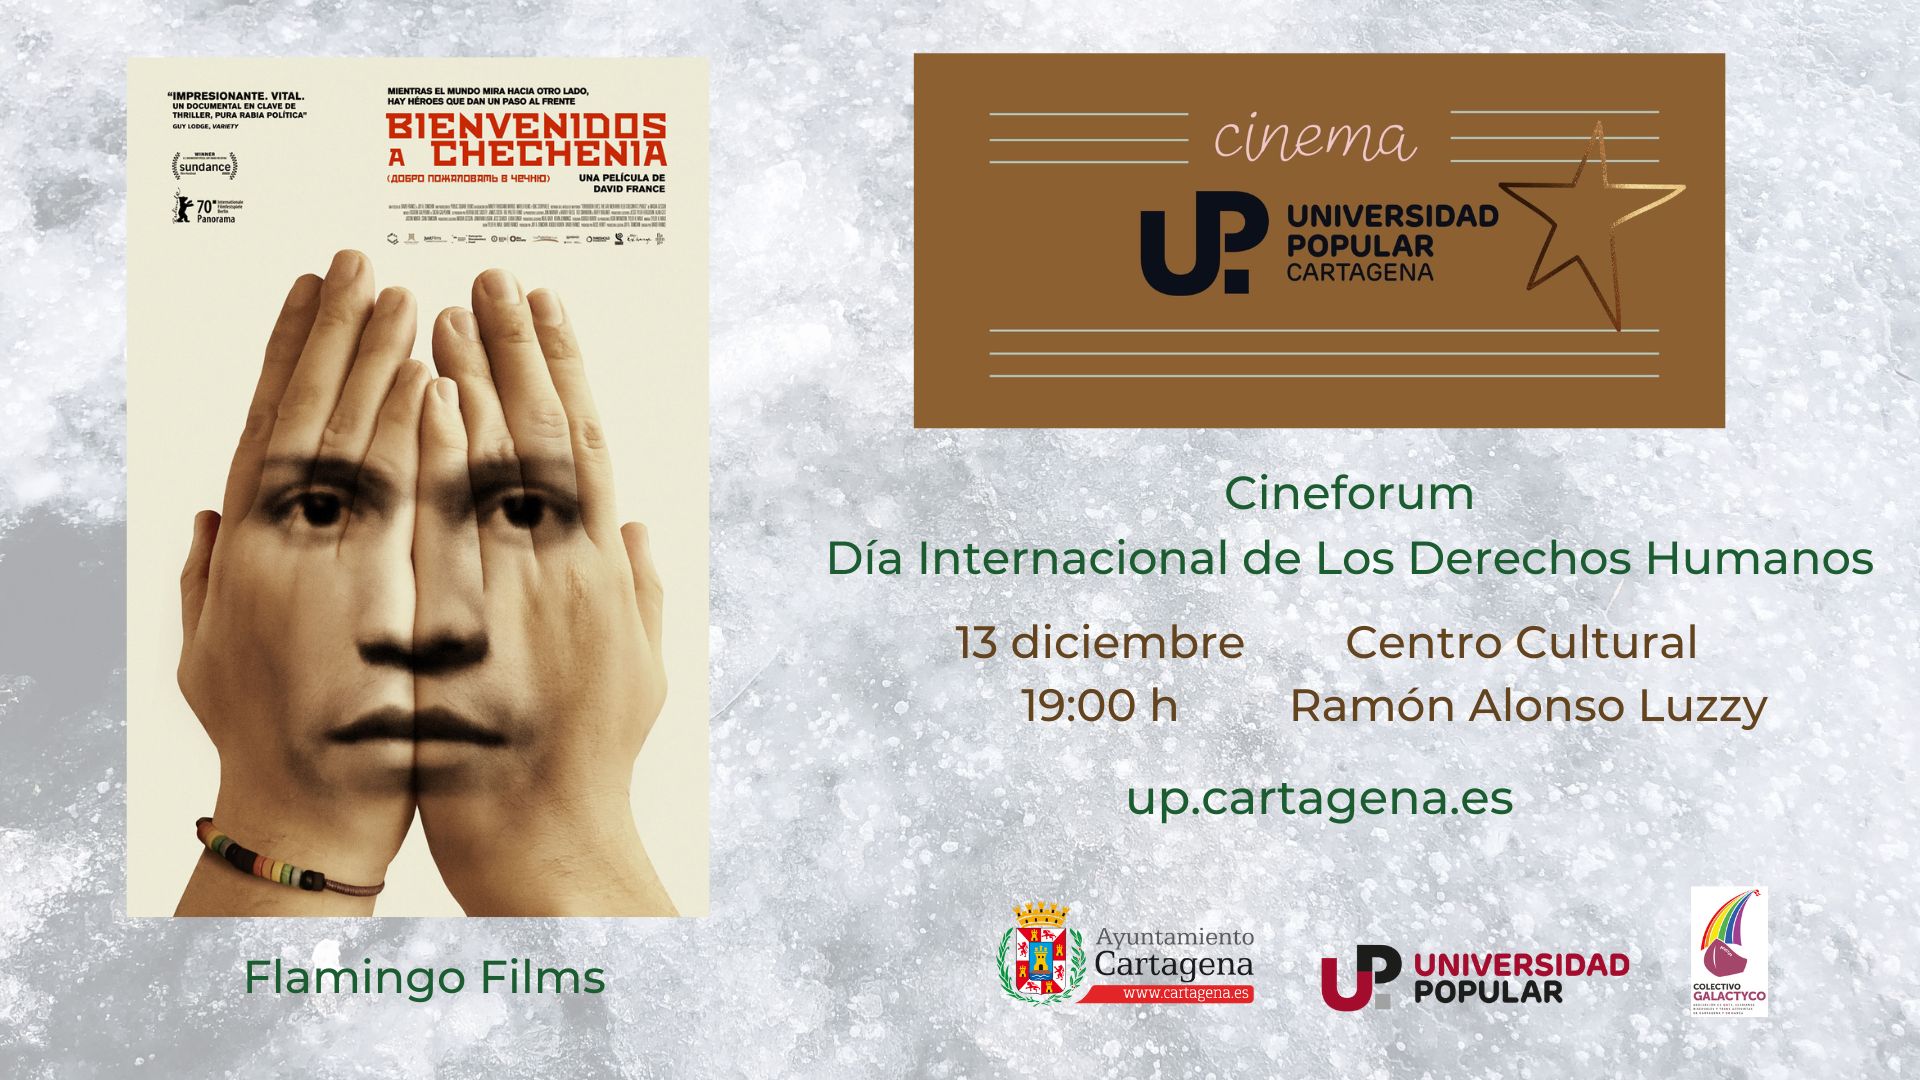 CINEMA UP BIENVENIDOS A CHECHENIA. Cine Forum Día Internacional de Los Derechos Humanos